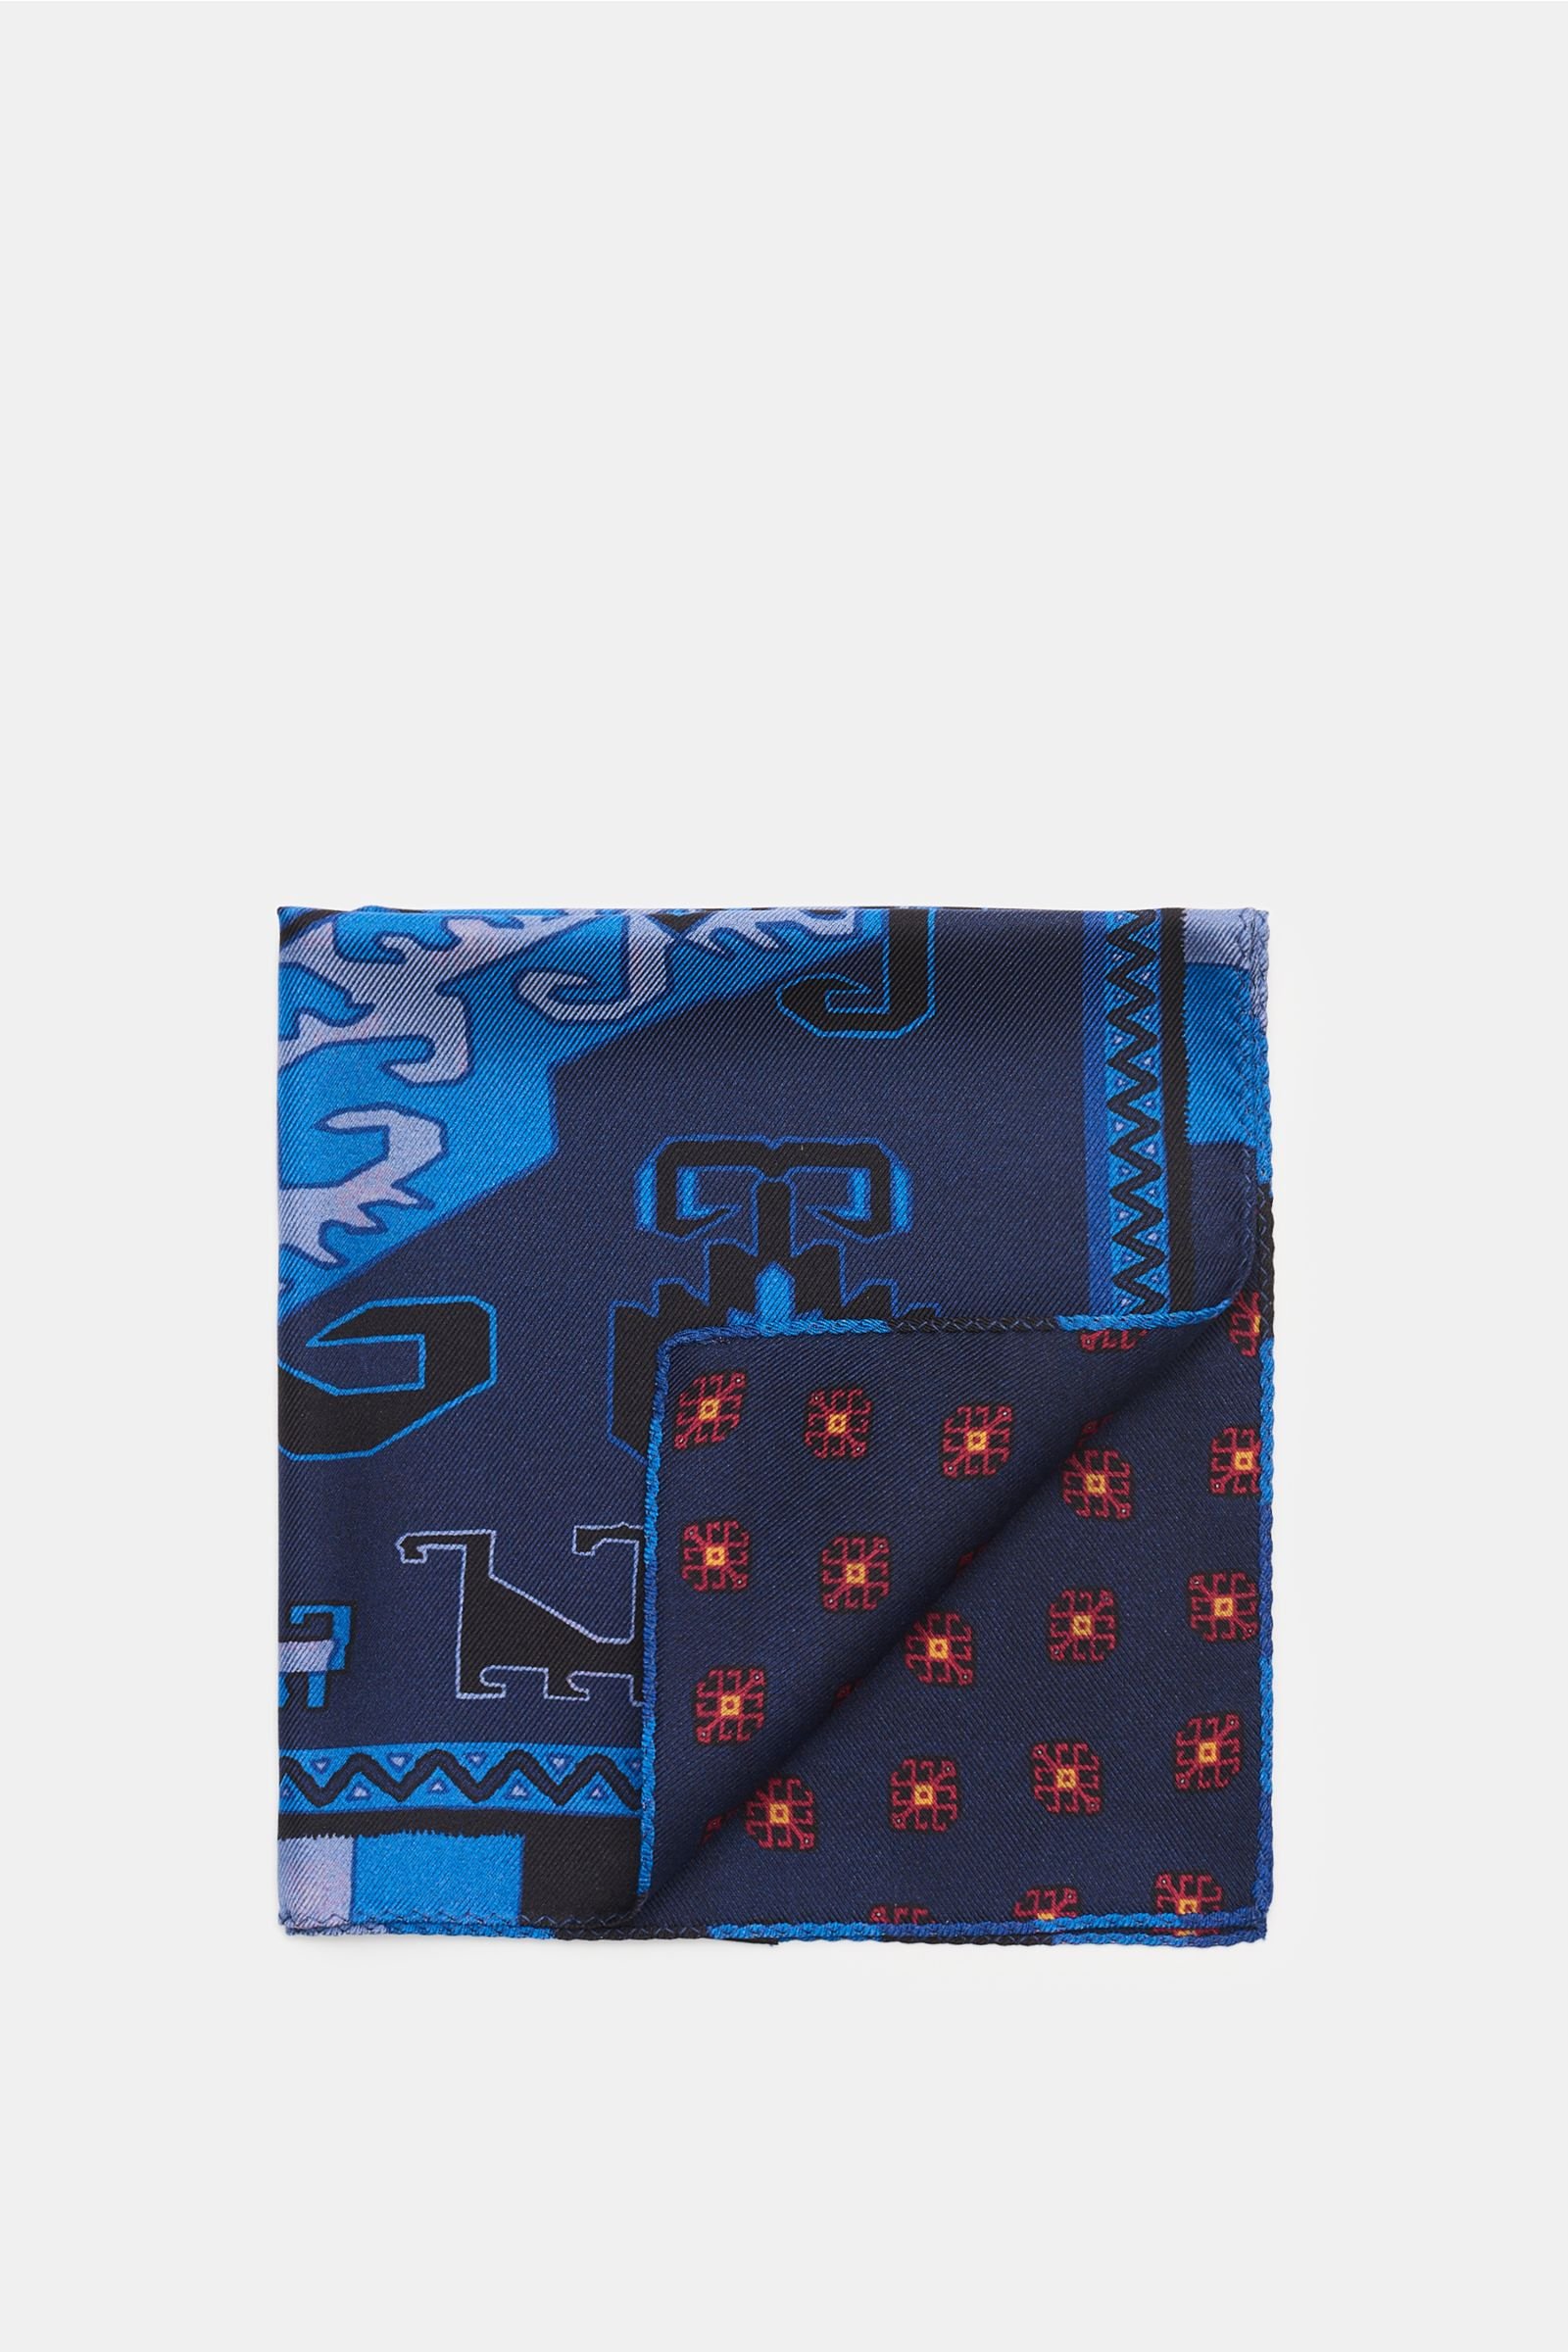 Pocket square navy/blue, patterned